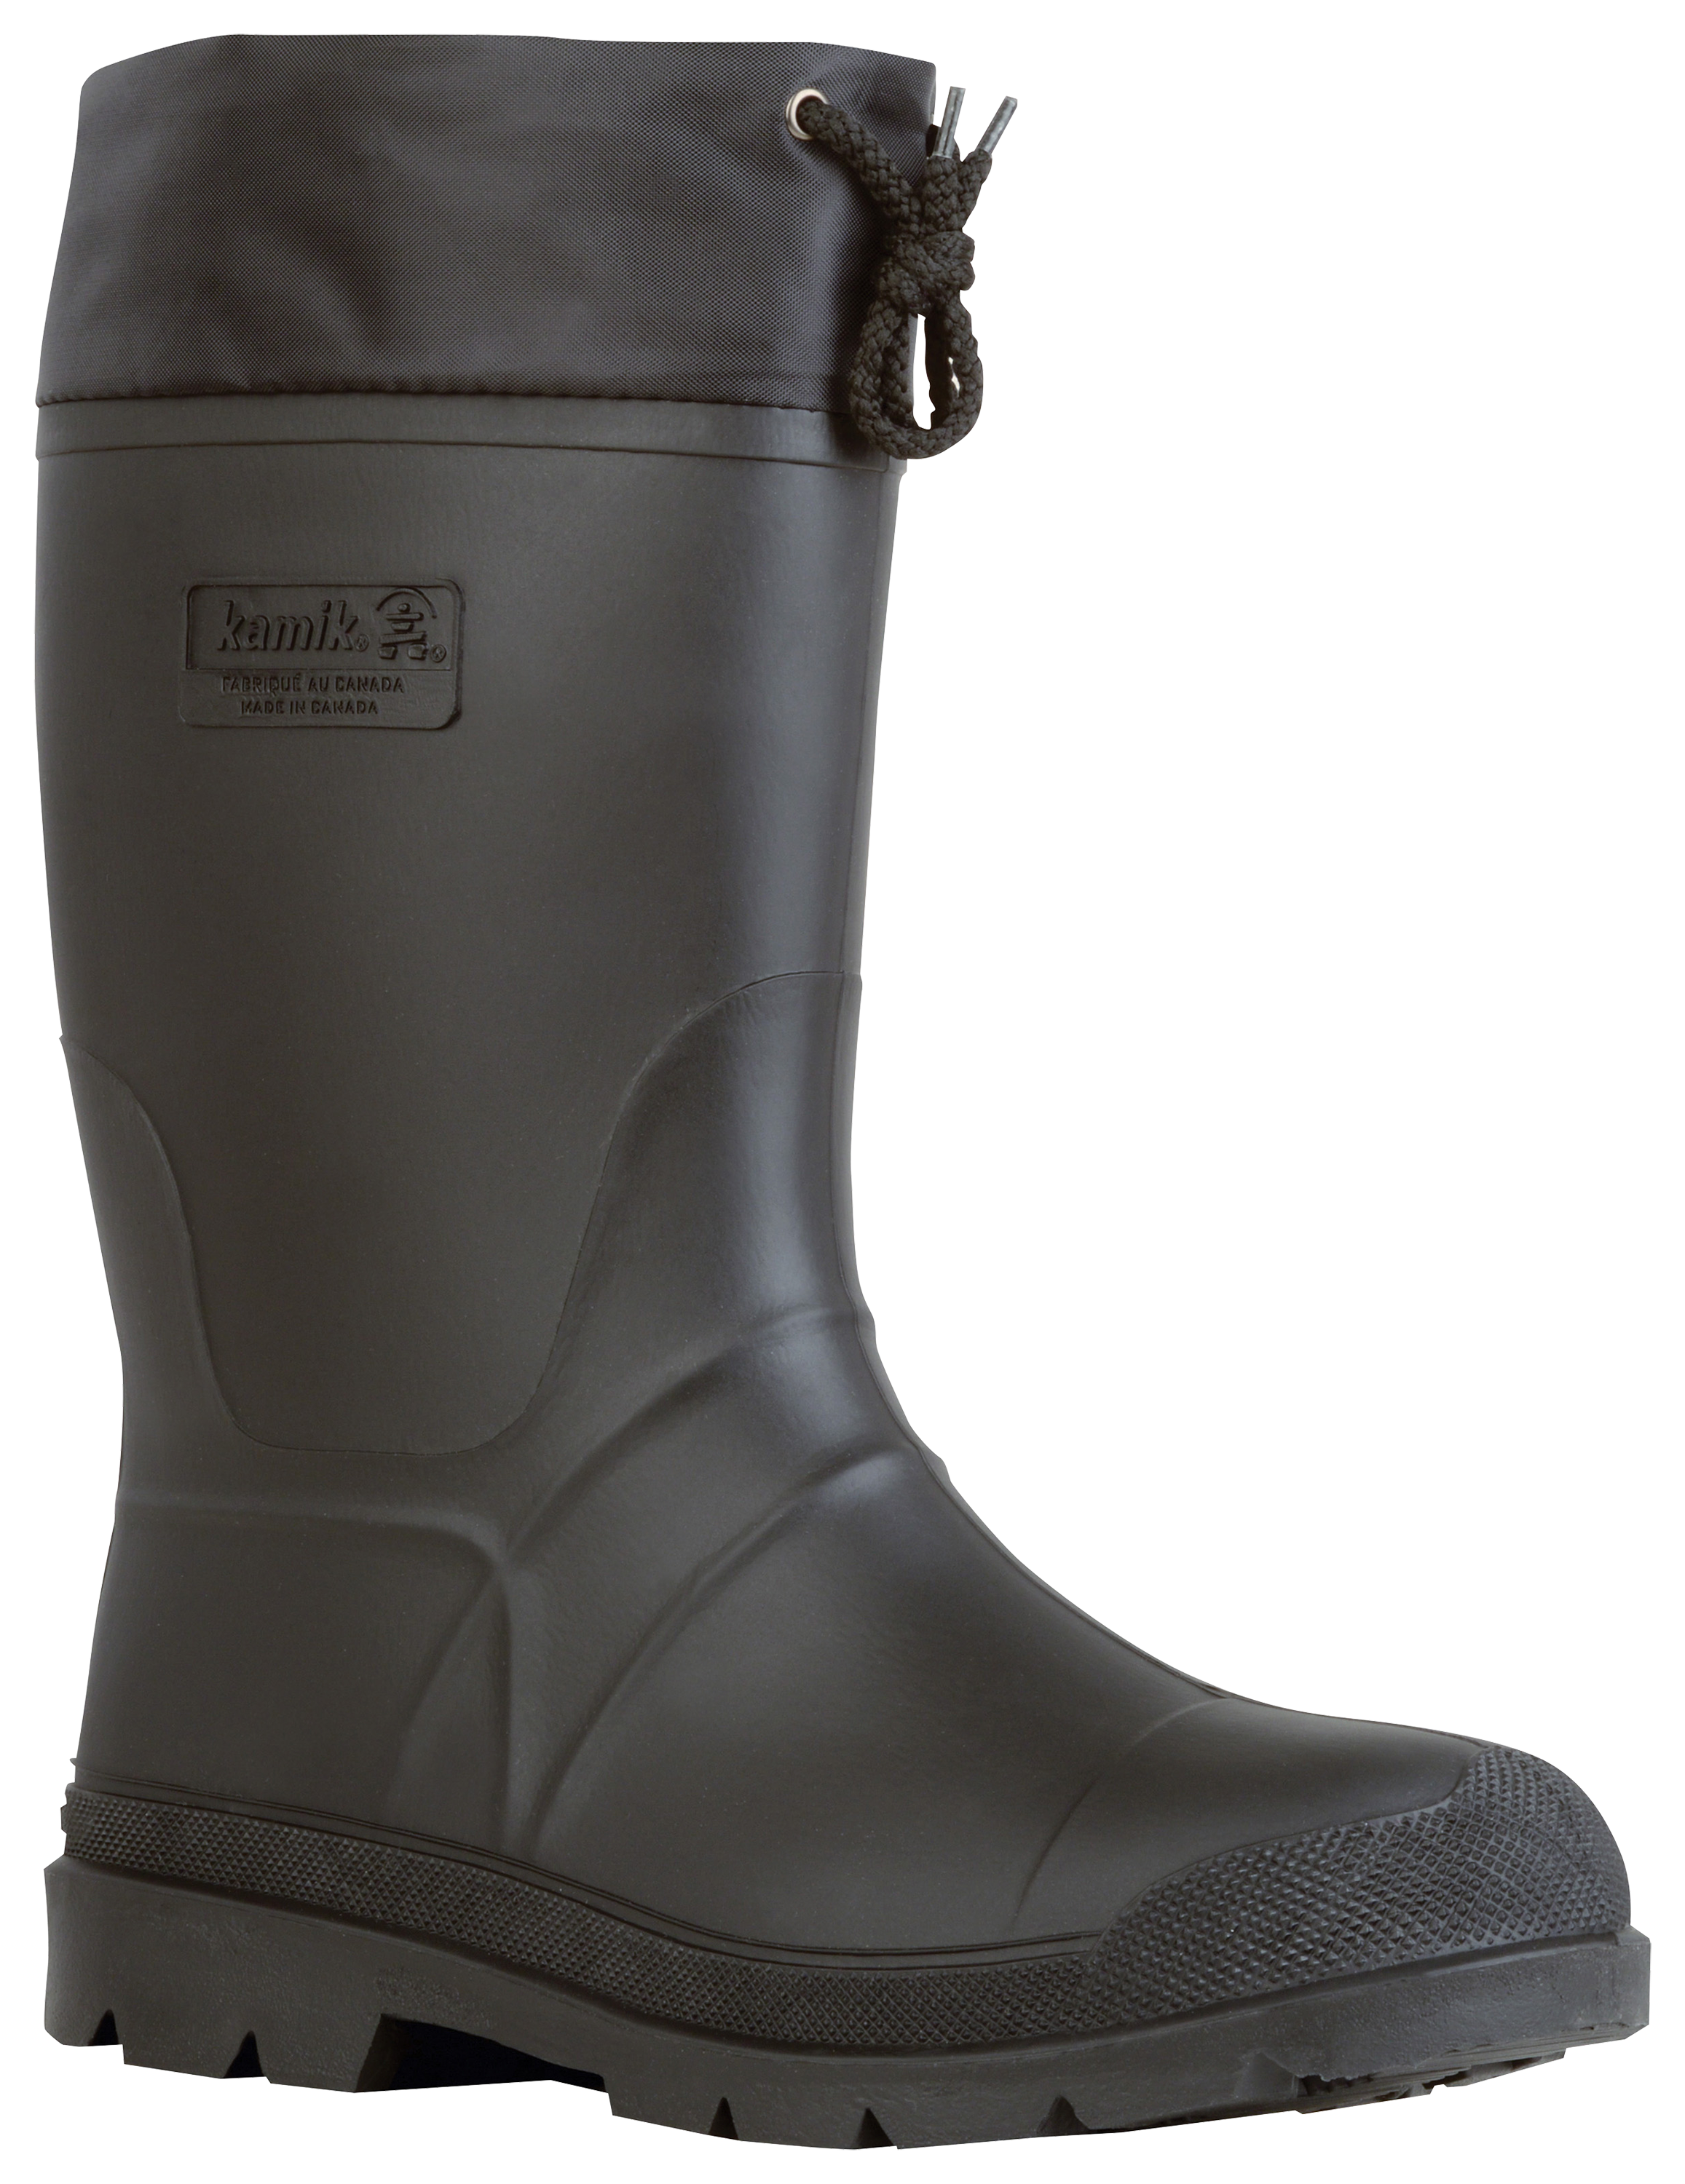 Kamik Forester Rubber Boots for Men | Cabela's